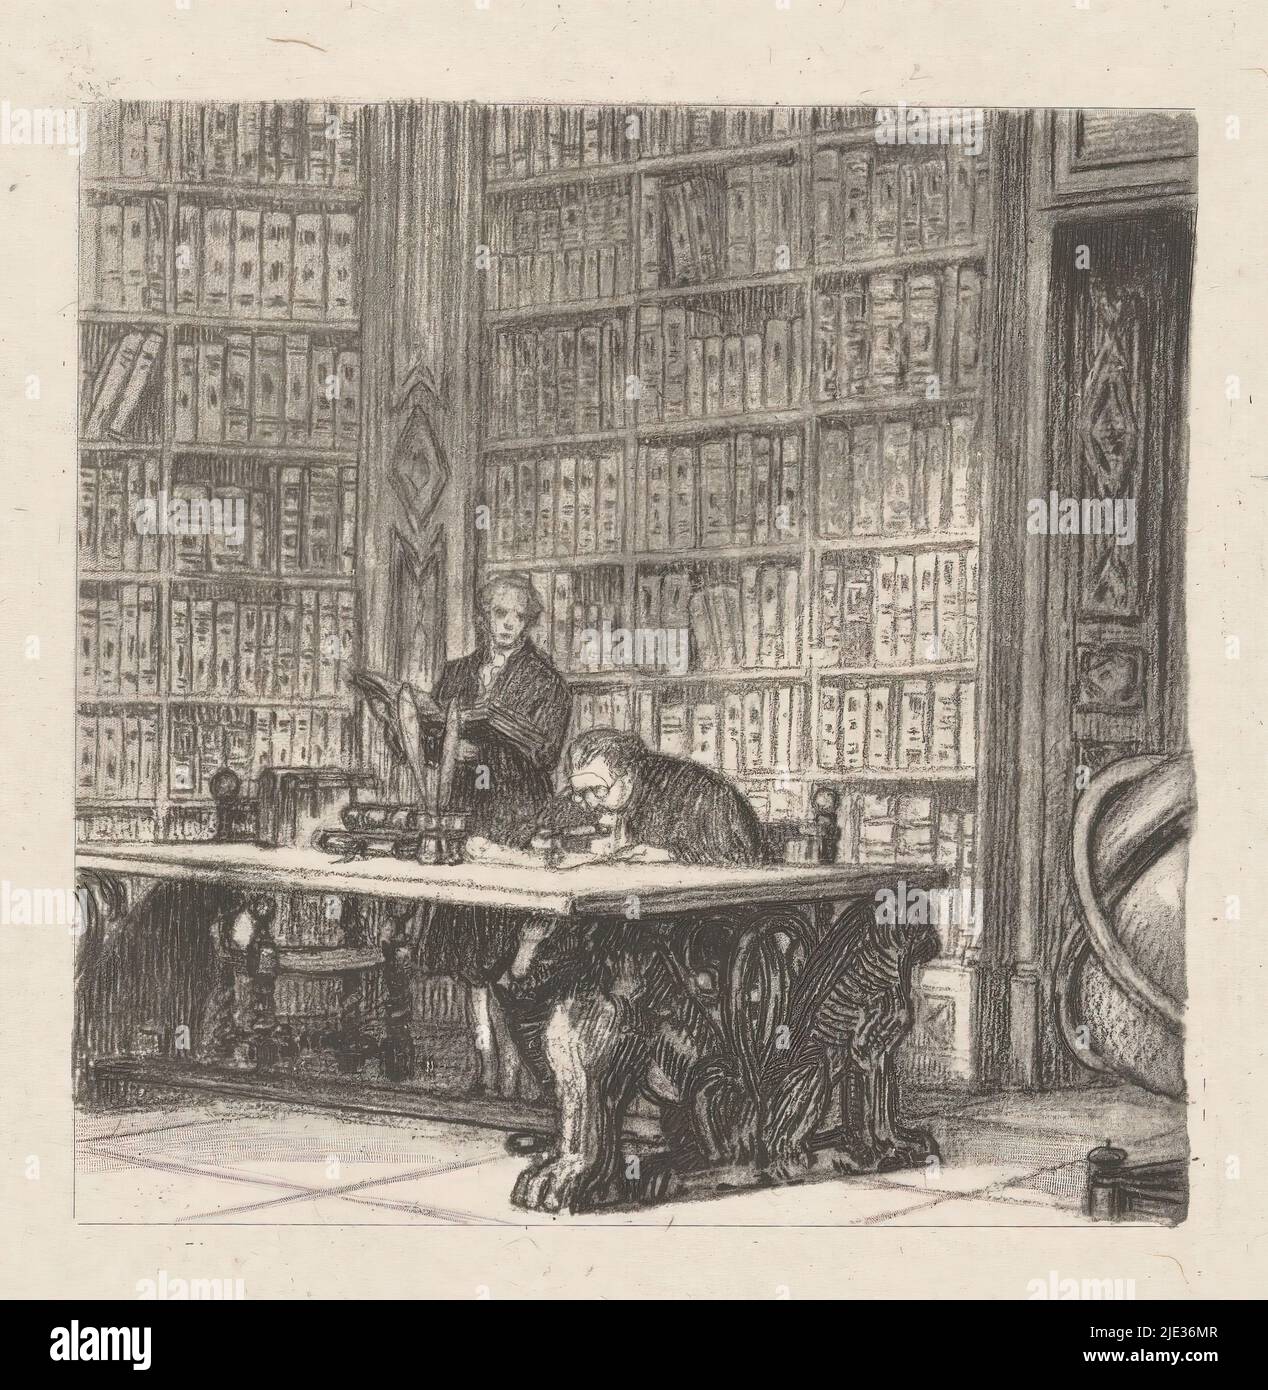 Deux hommes dans une bibliothèque, l'un des hommes est assis avec une loupe derrière une table d'écriture dont la base est composée de lions. Une partie d'un globe est visible au premier plan., Print Maker: Anonyme, c. 1850 - c. 1925, papier Chine, hauteur 224 mm × largeur 166 mm Banque D'Images